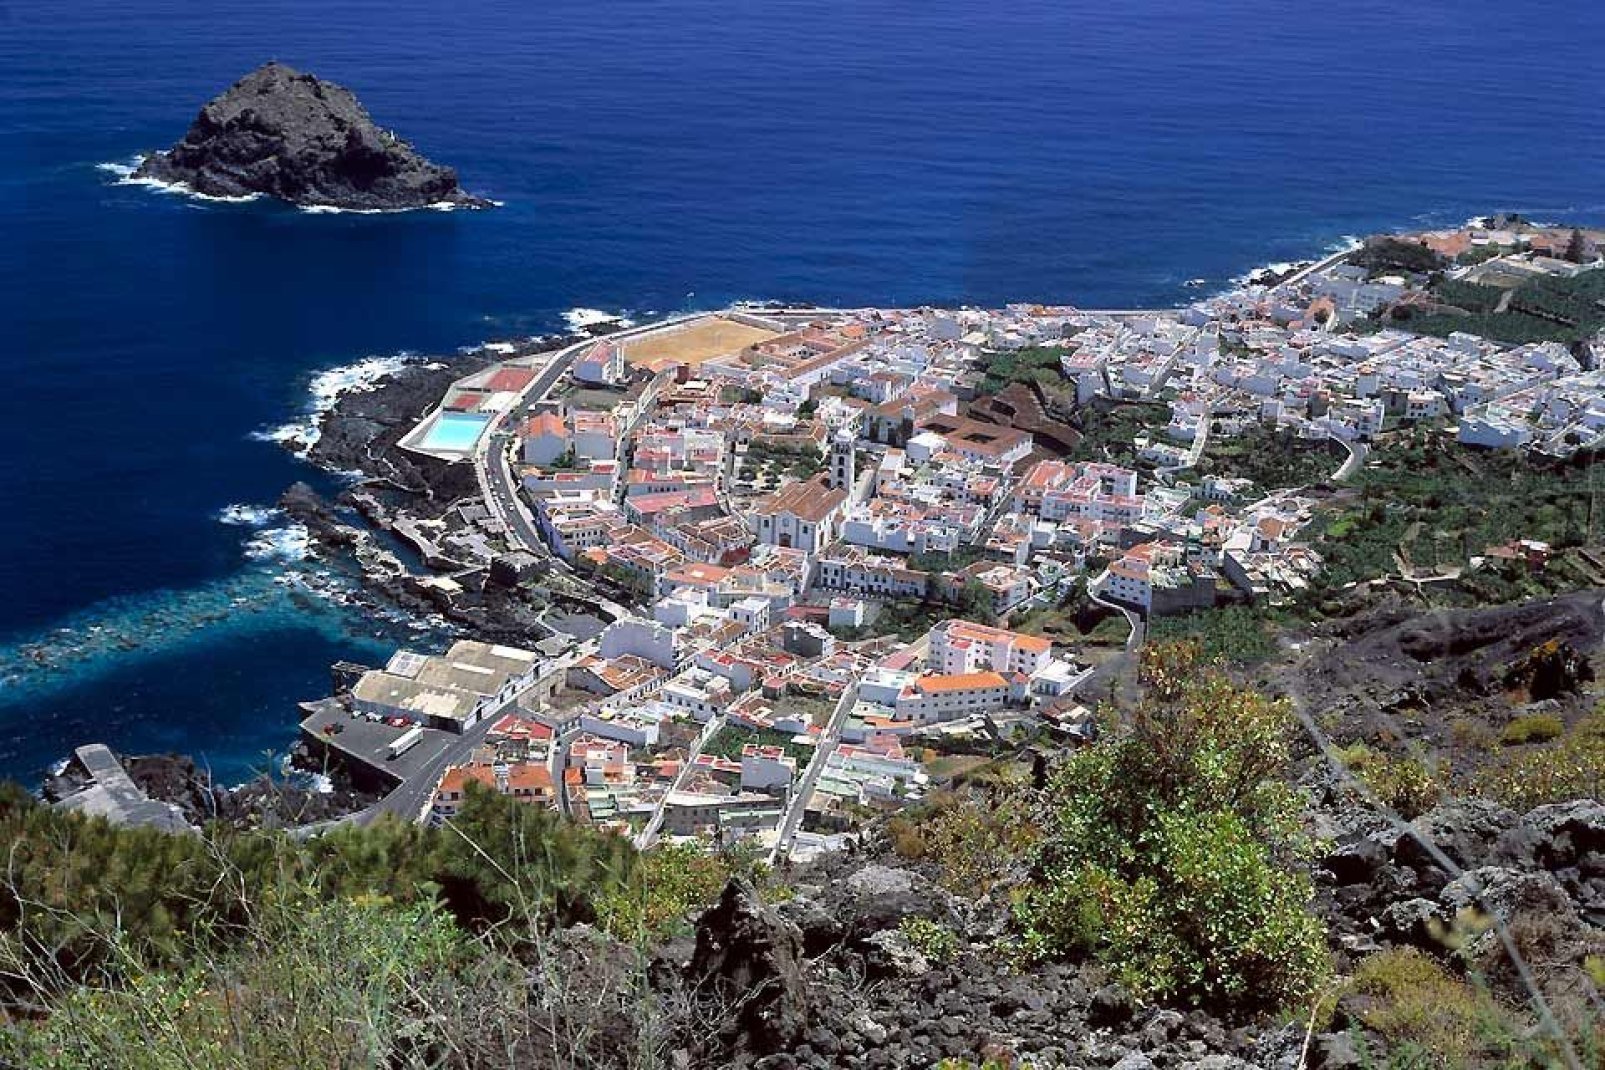 Fino al 1706, Garachico era il porto più importante dell'isola, ma questa data fu segnata da una terribile eruzione del Teide che danneggiò una buona parte del villaggio.